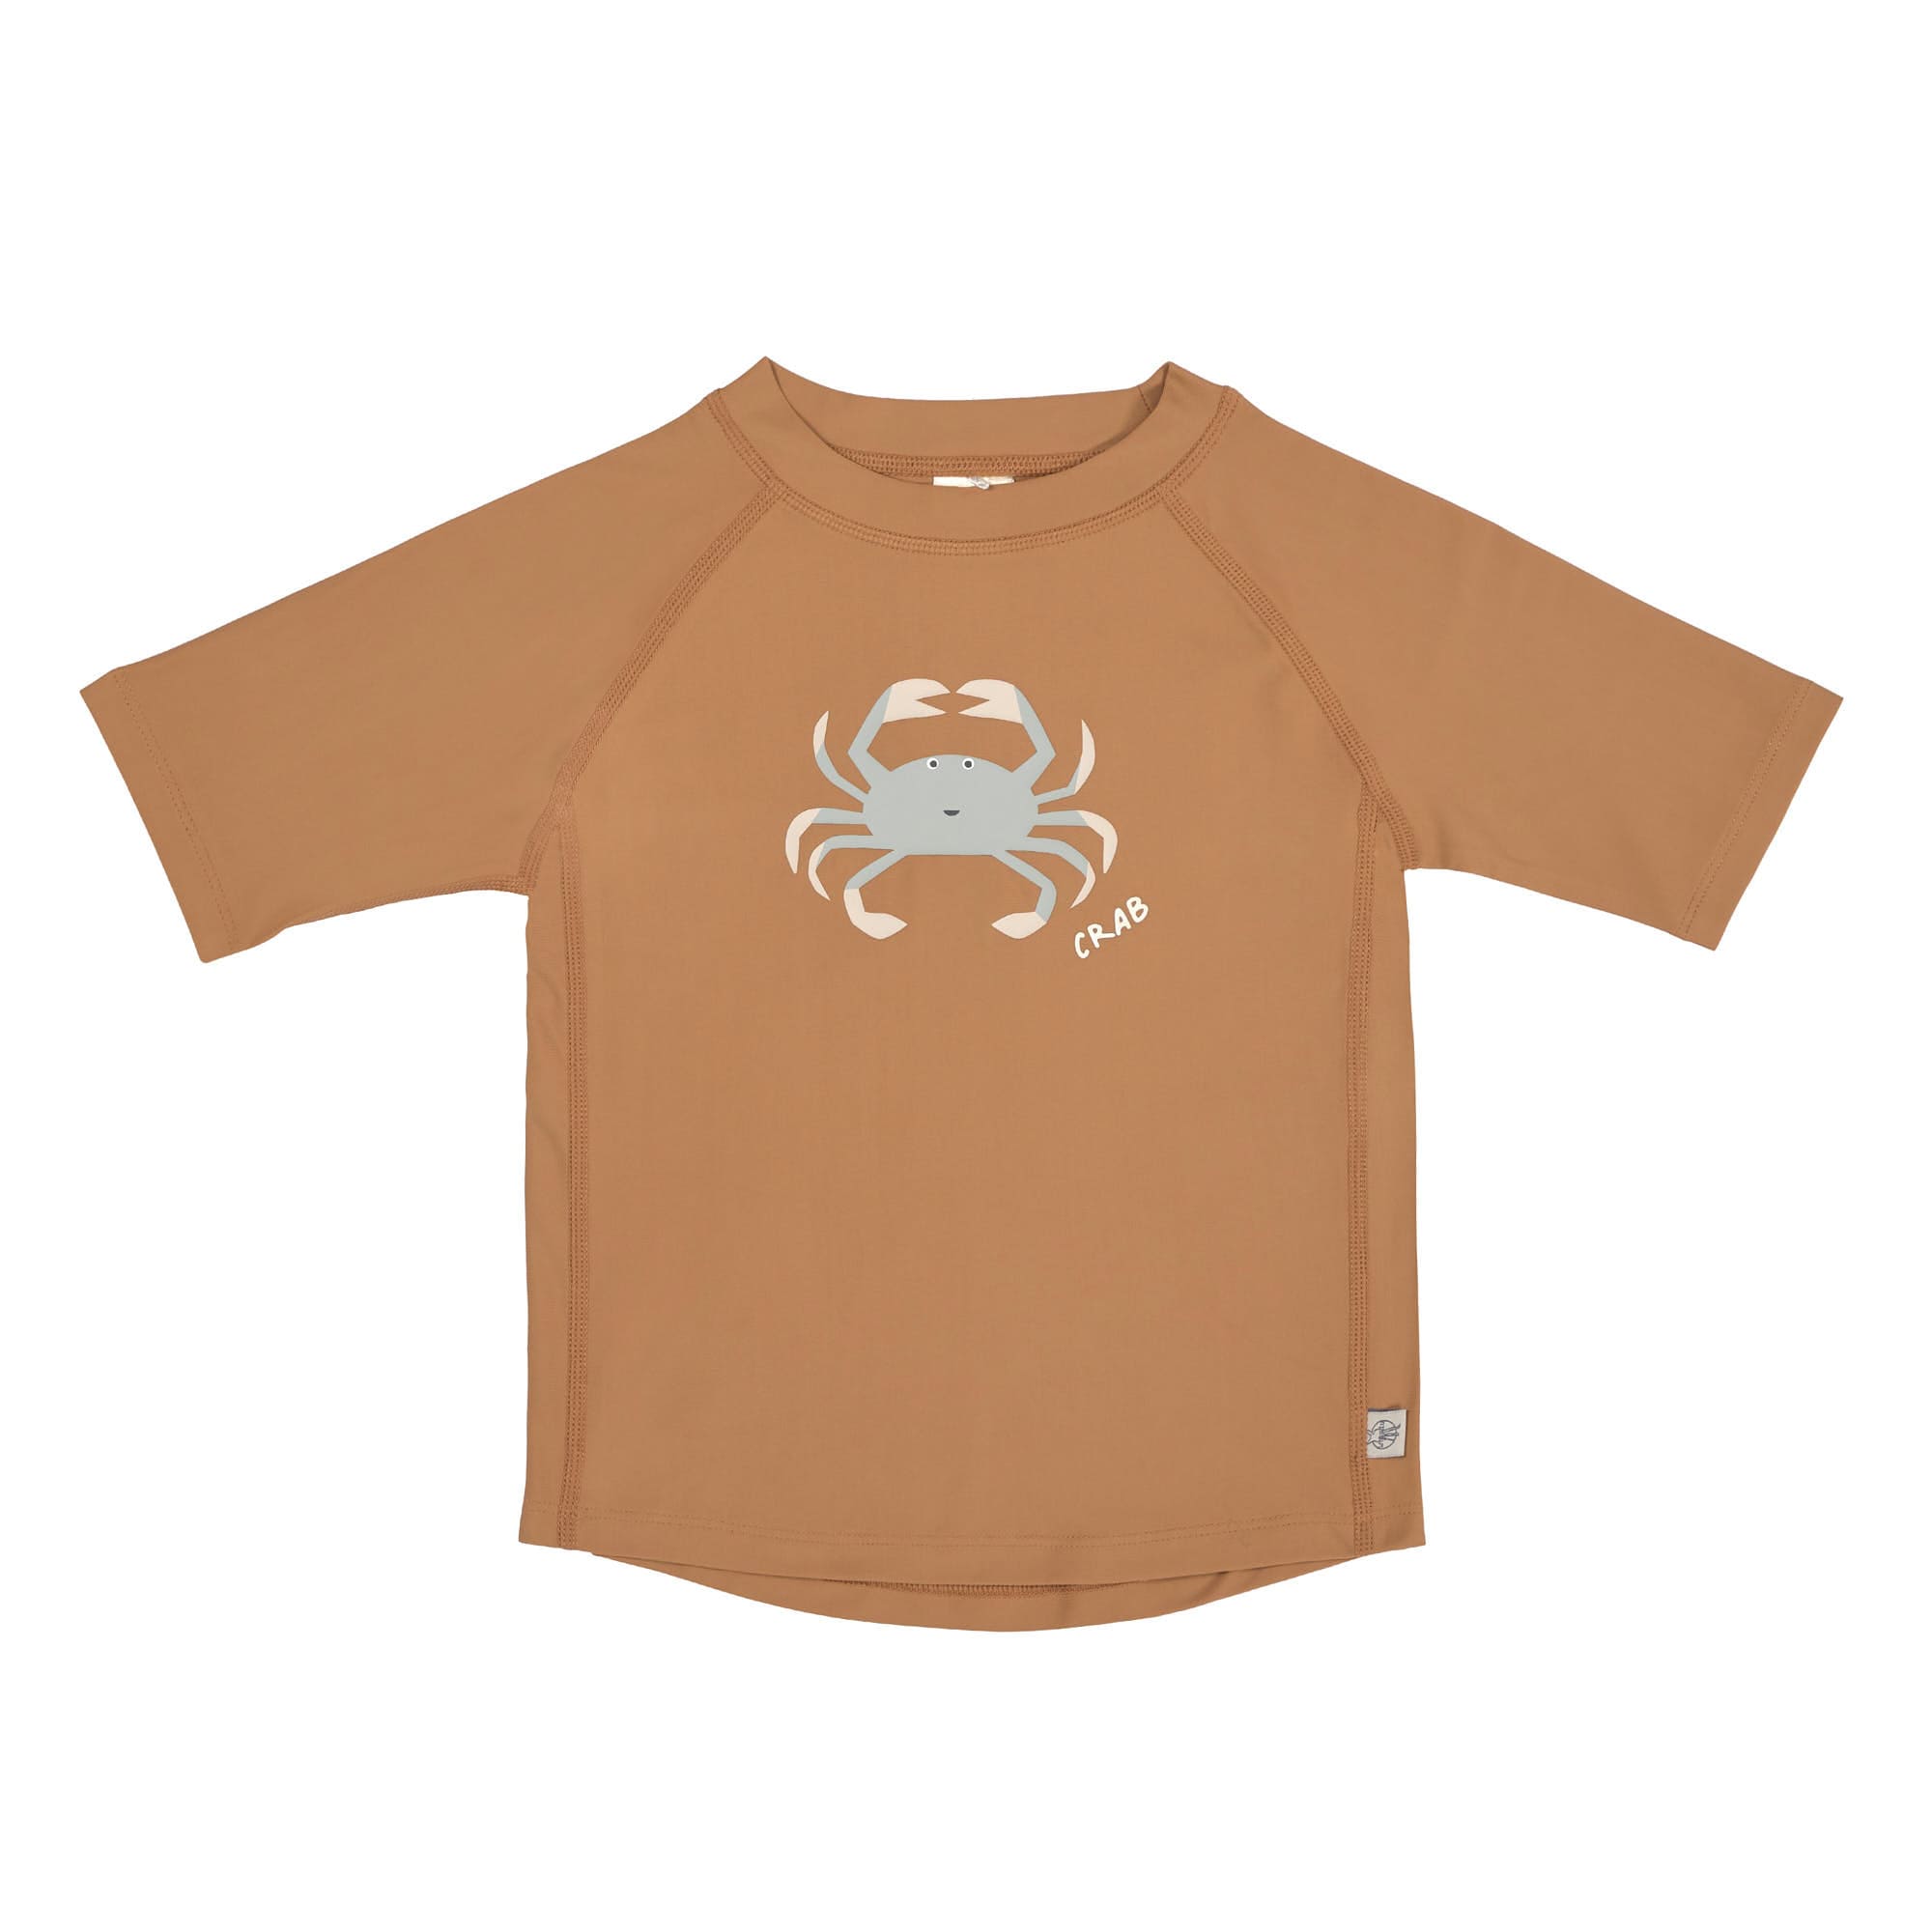 Badekleidung T-Shirt bunt/creme 92 Lässig hello Beach